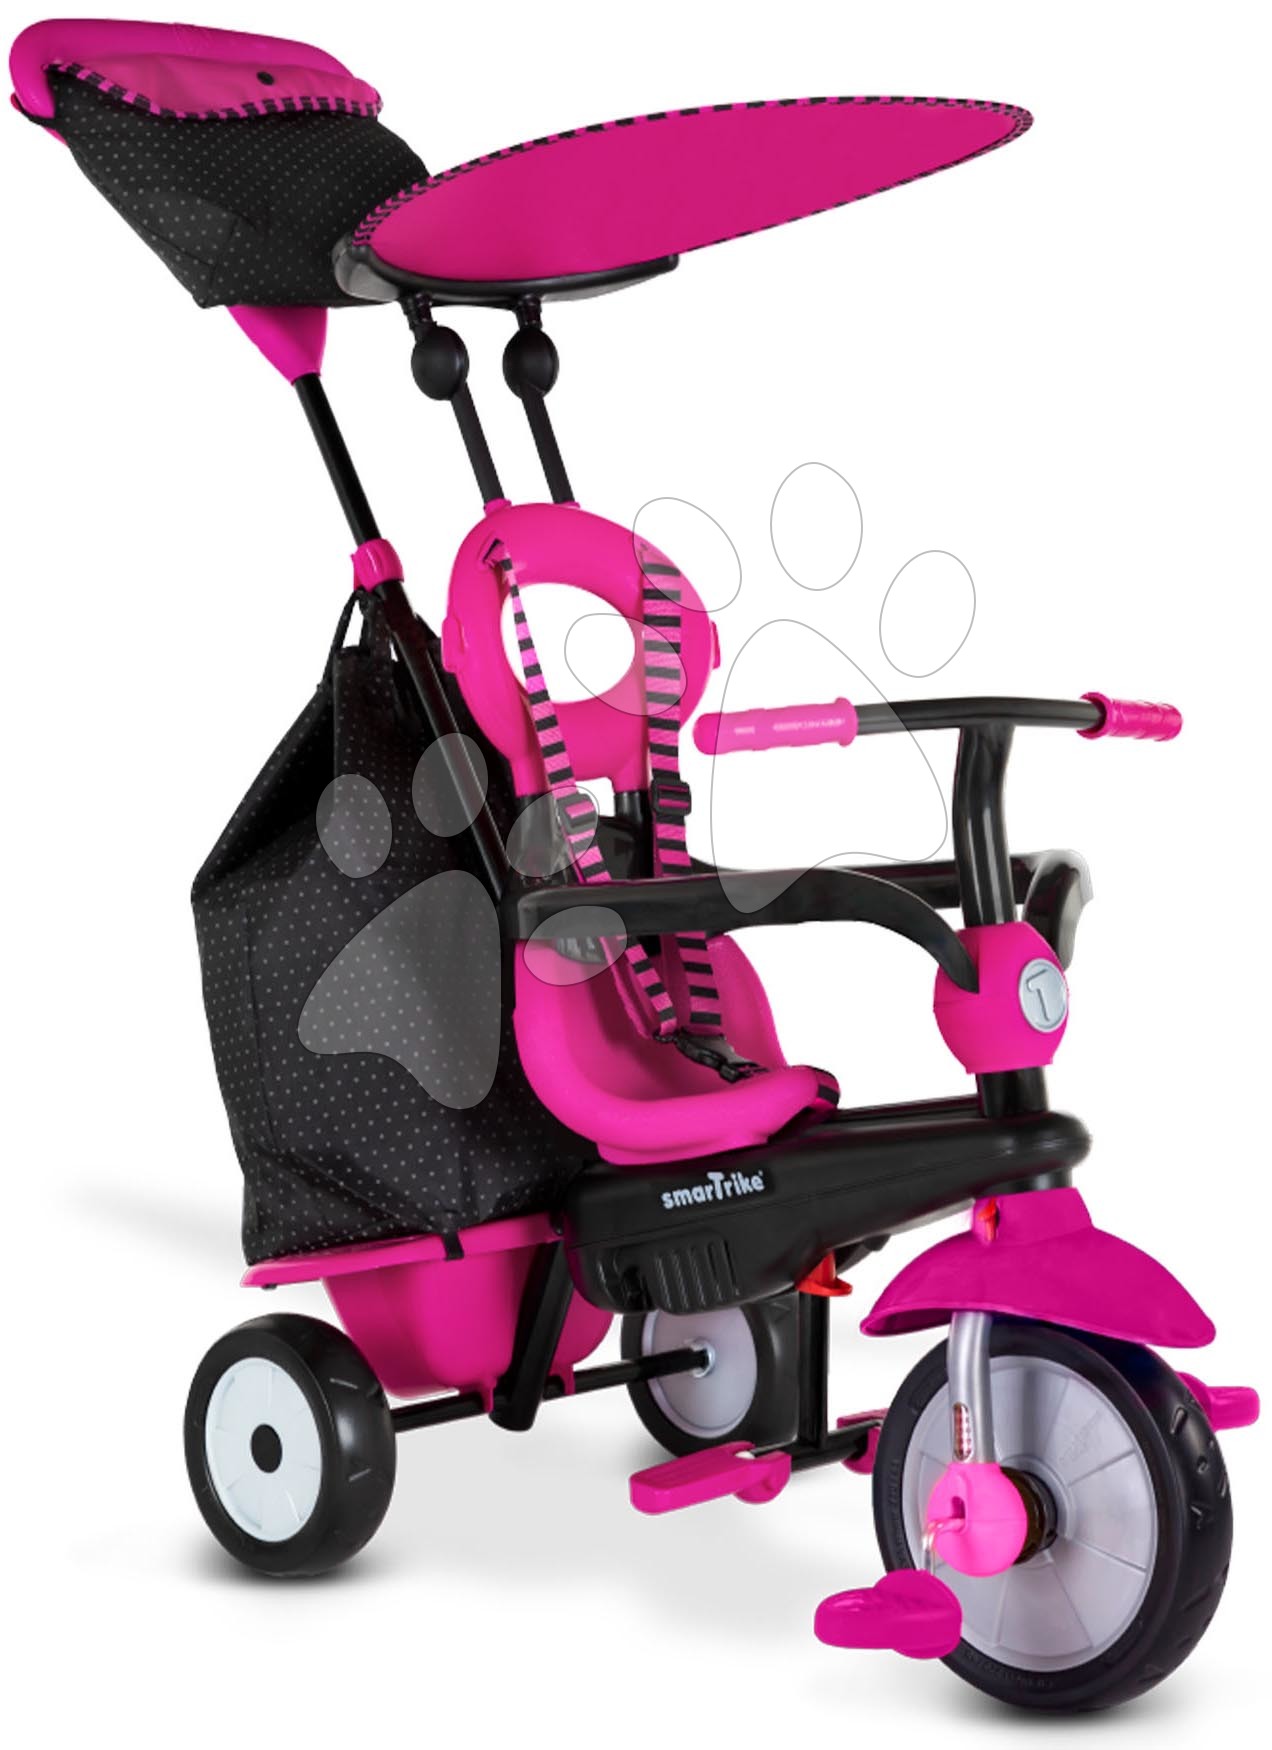 Triciklik 10 hónapos kortól - Tricikli Vanilla Plus Pink Classic smarTrike TouchSteering vezérlés gumikerekek lengéscsillapító 2 táska 10 hó-tól